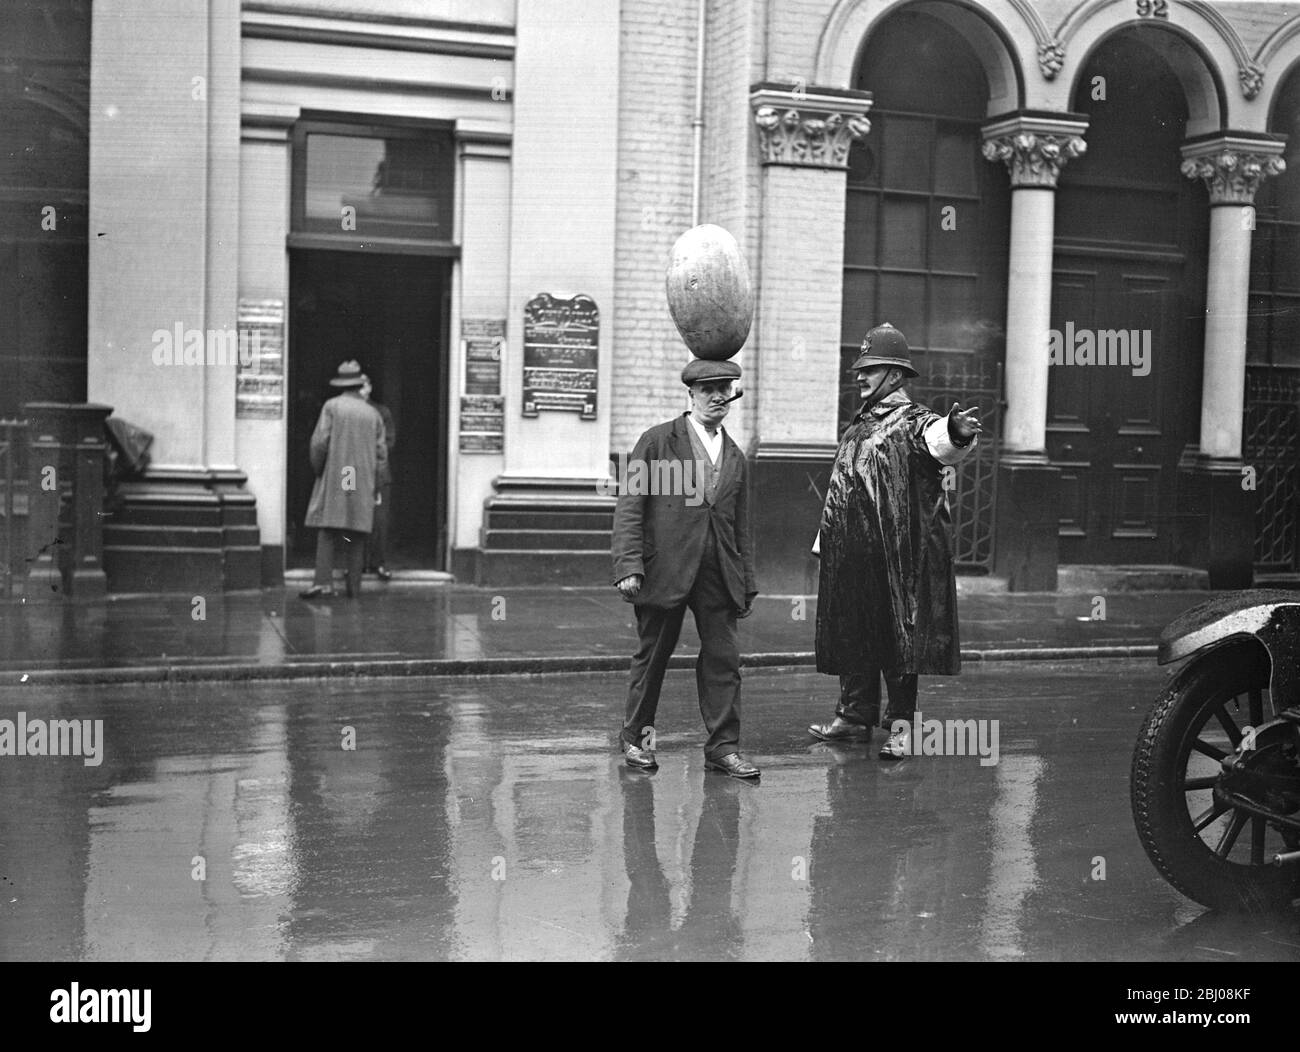 Ein typischer Portier von Covent Garden, Herr Jimmy Sainsbury, der seine perfekte Balance zeigt. - - - - 12. September 1931 Stockfoto